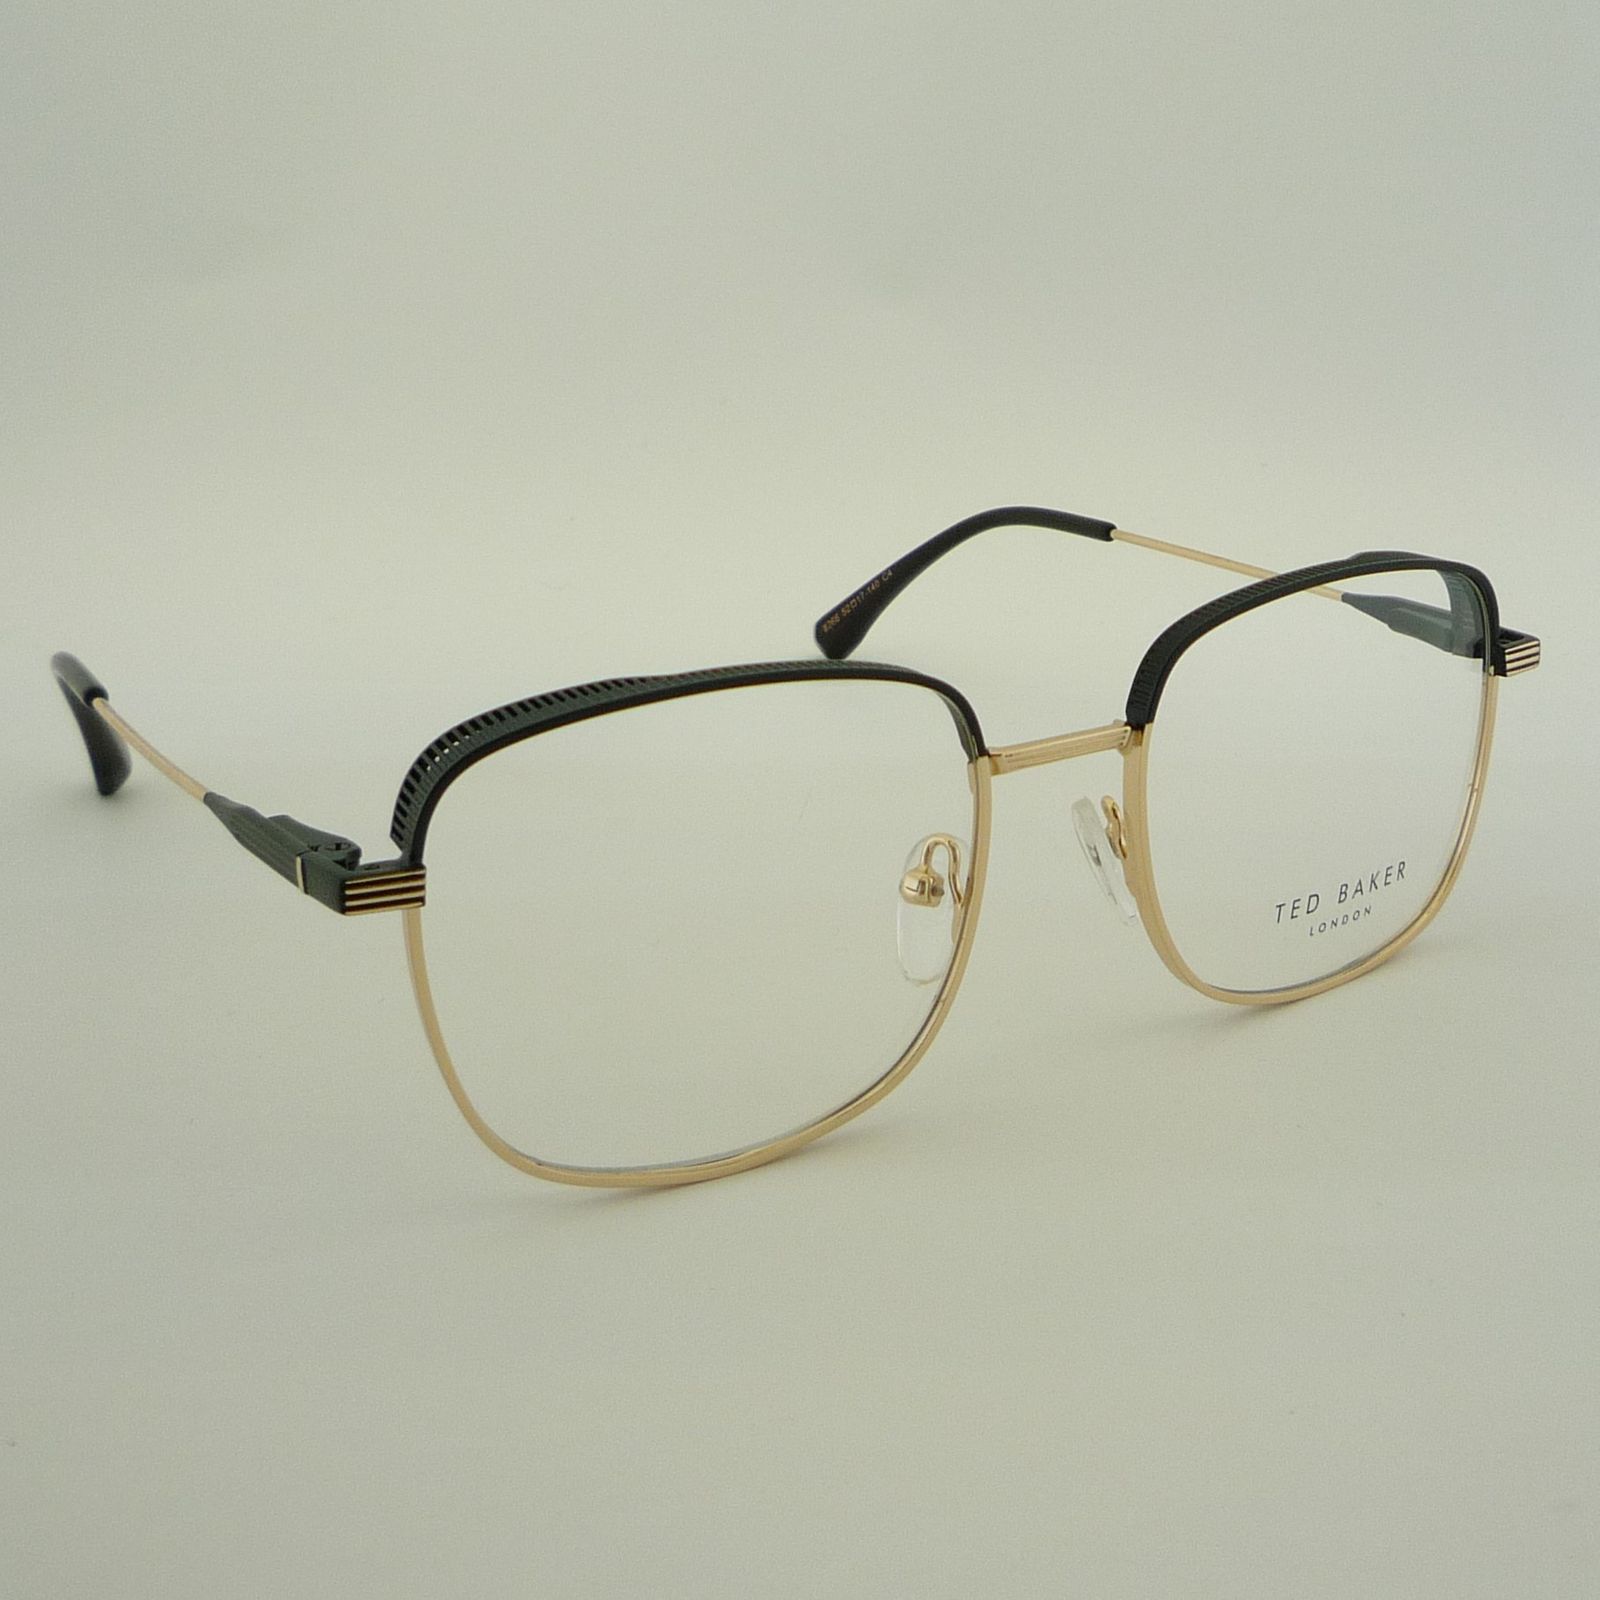 فریم عینک طبی تد بیکر مدل 8266C4 -  - 5